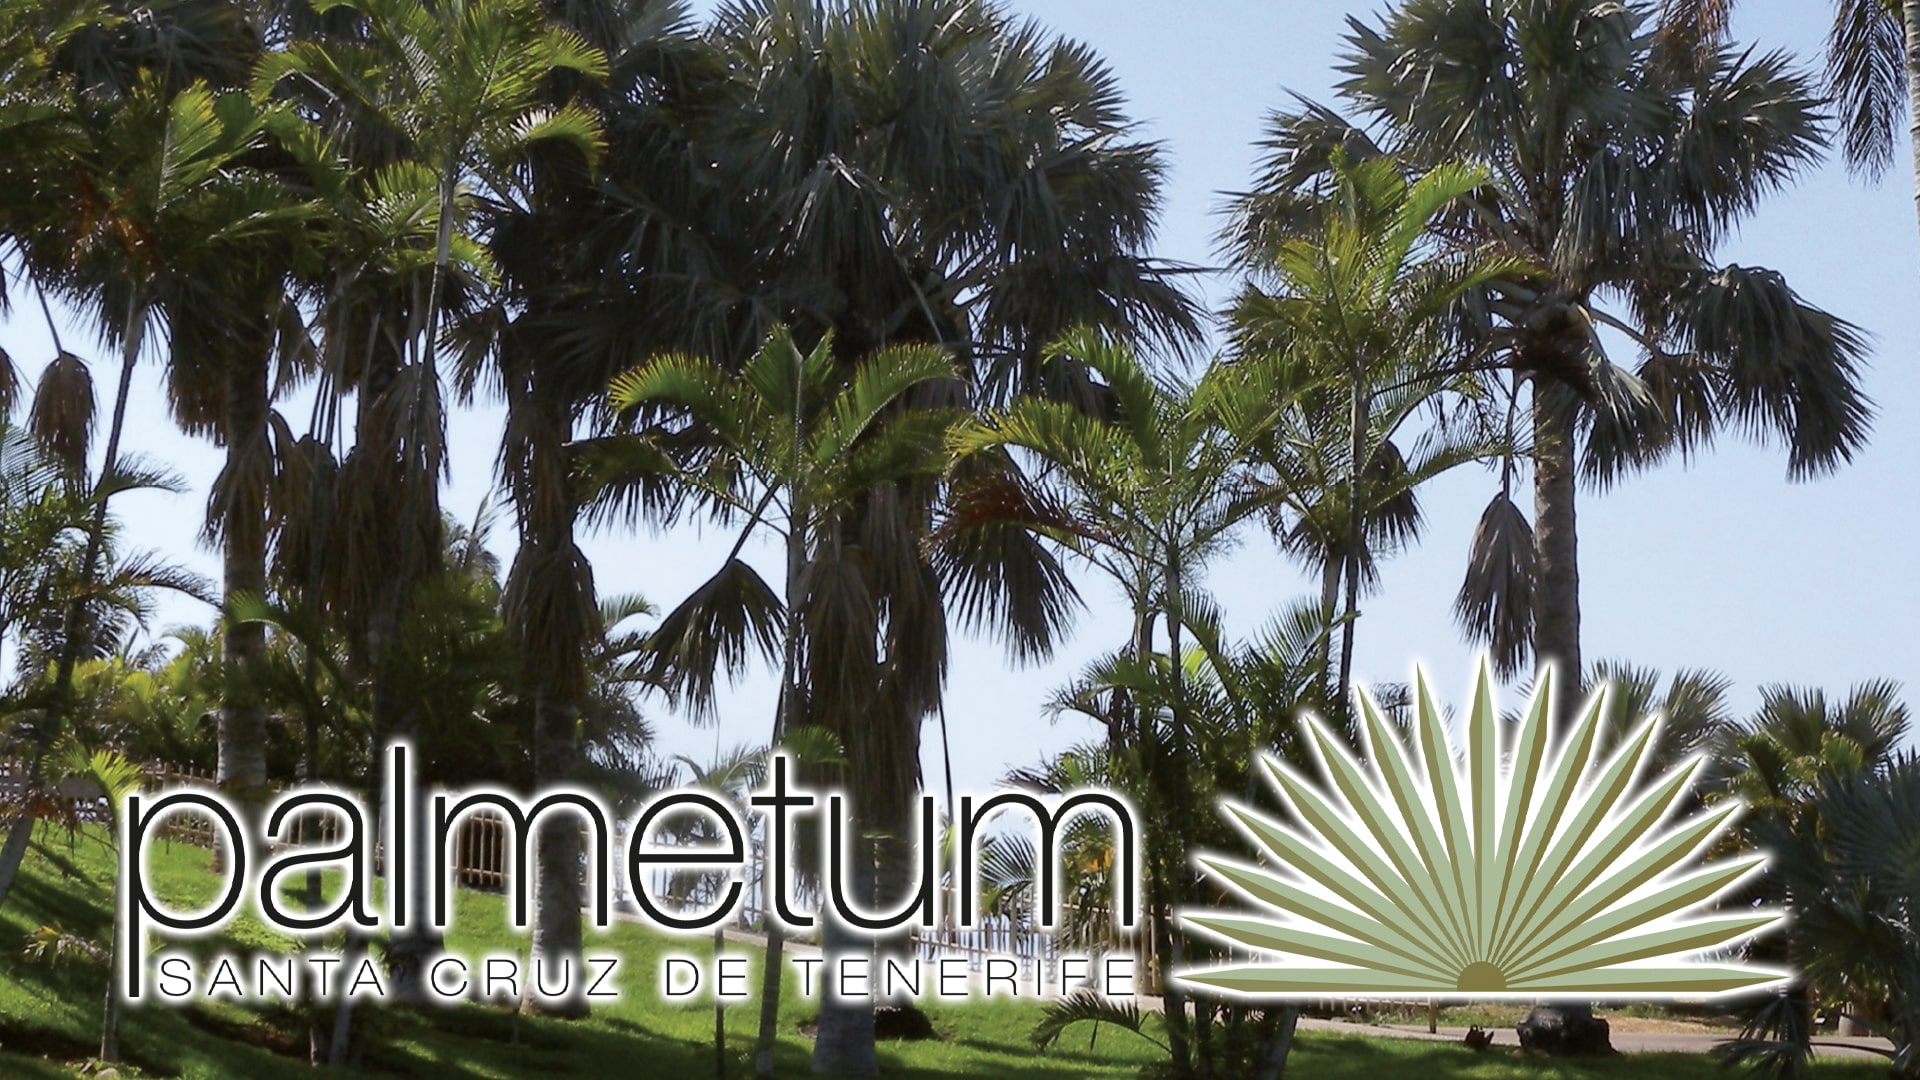 Palmetum Santa Cruz Tenerife